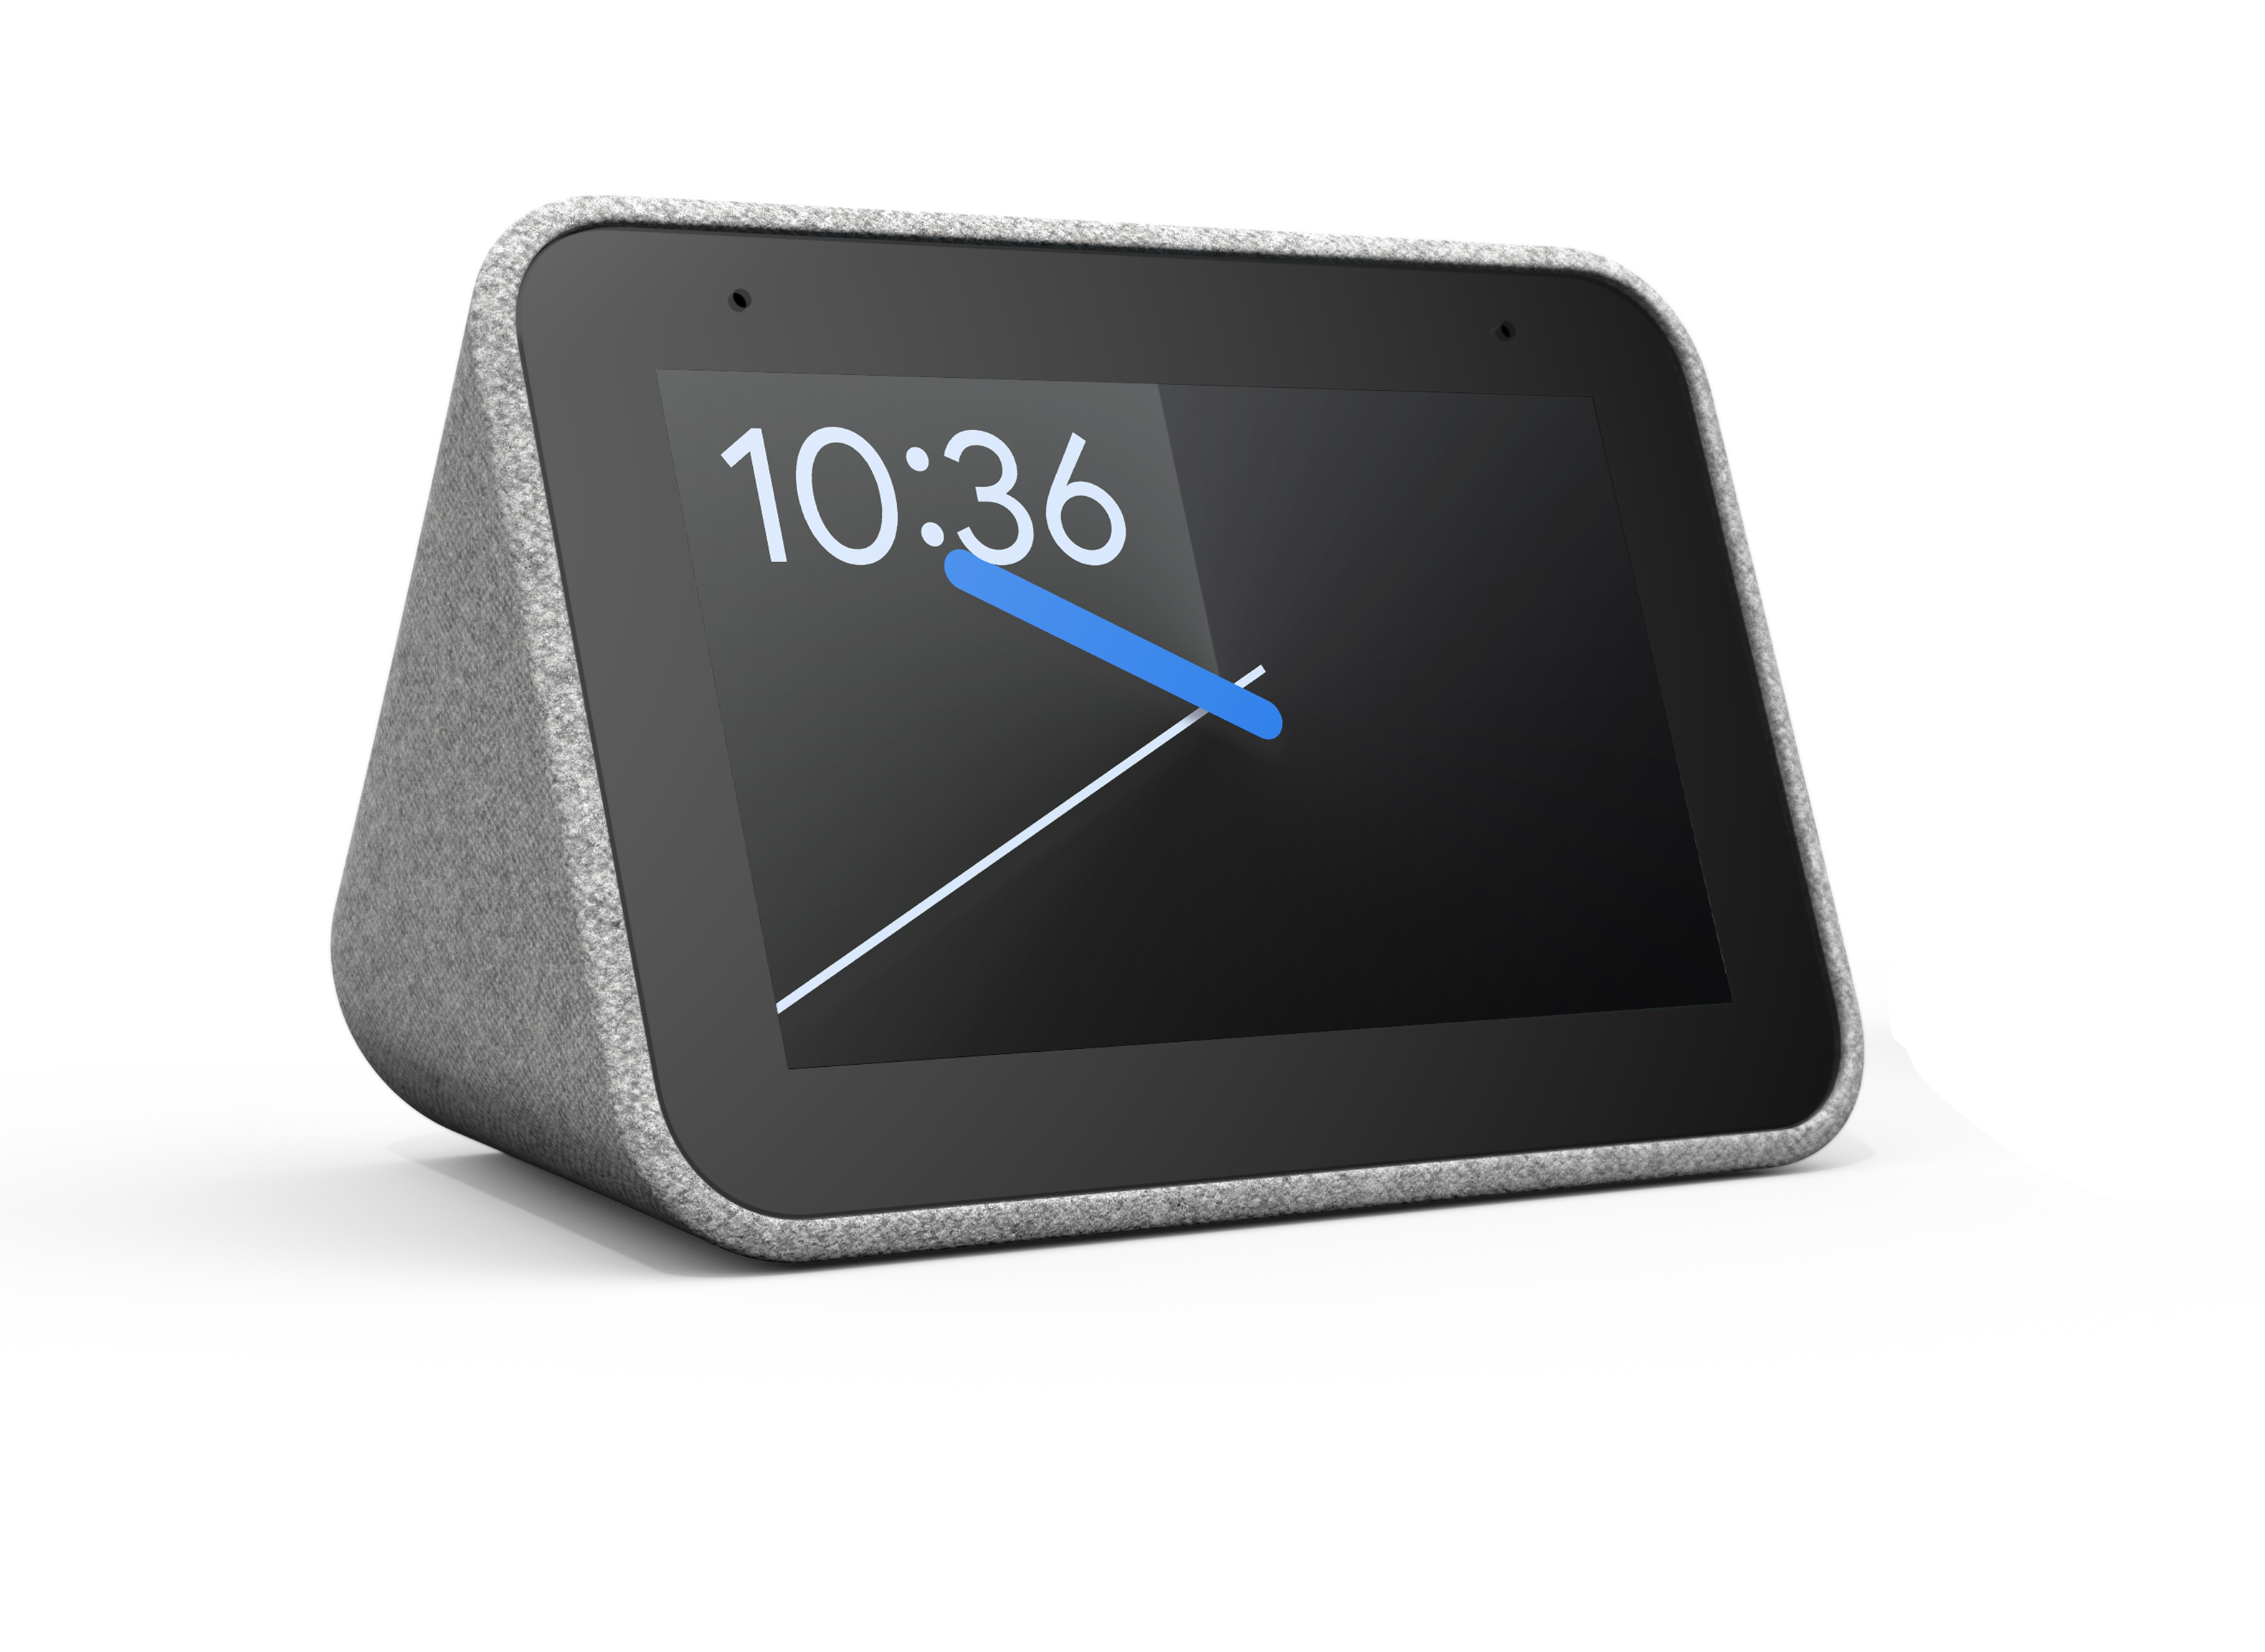 Lenovo Smart Clock Smart Speaker Review - Consumer Reports